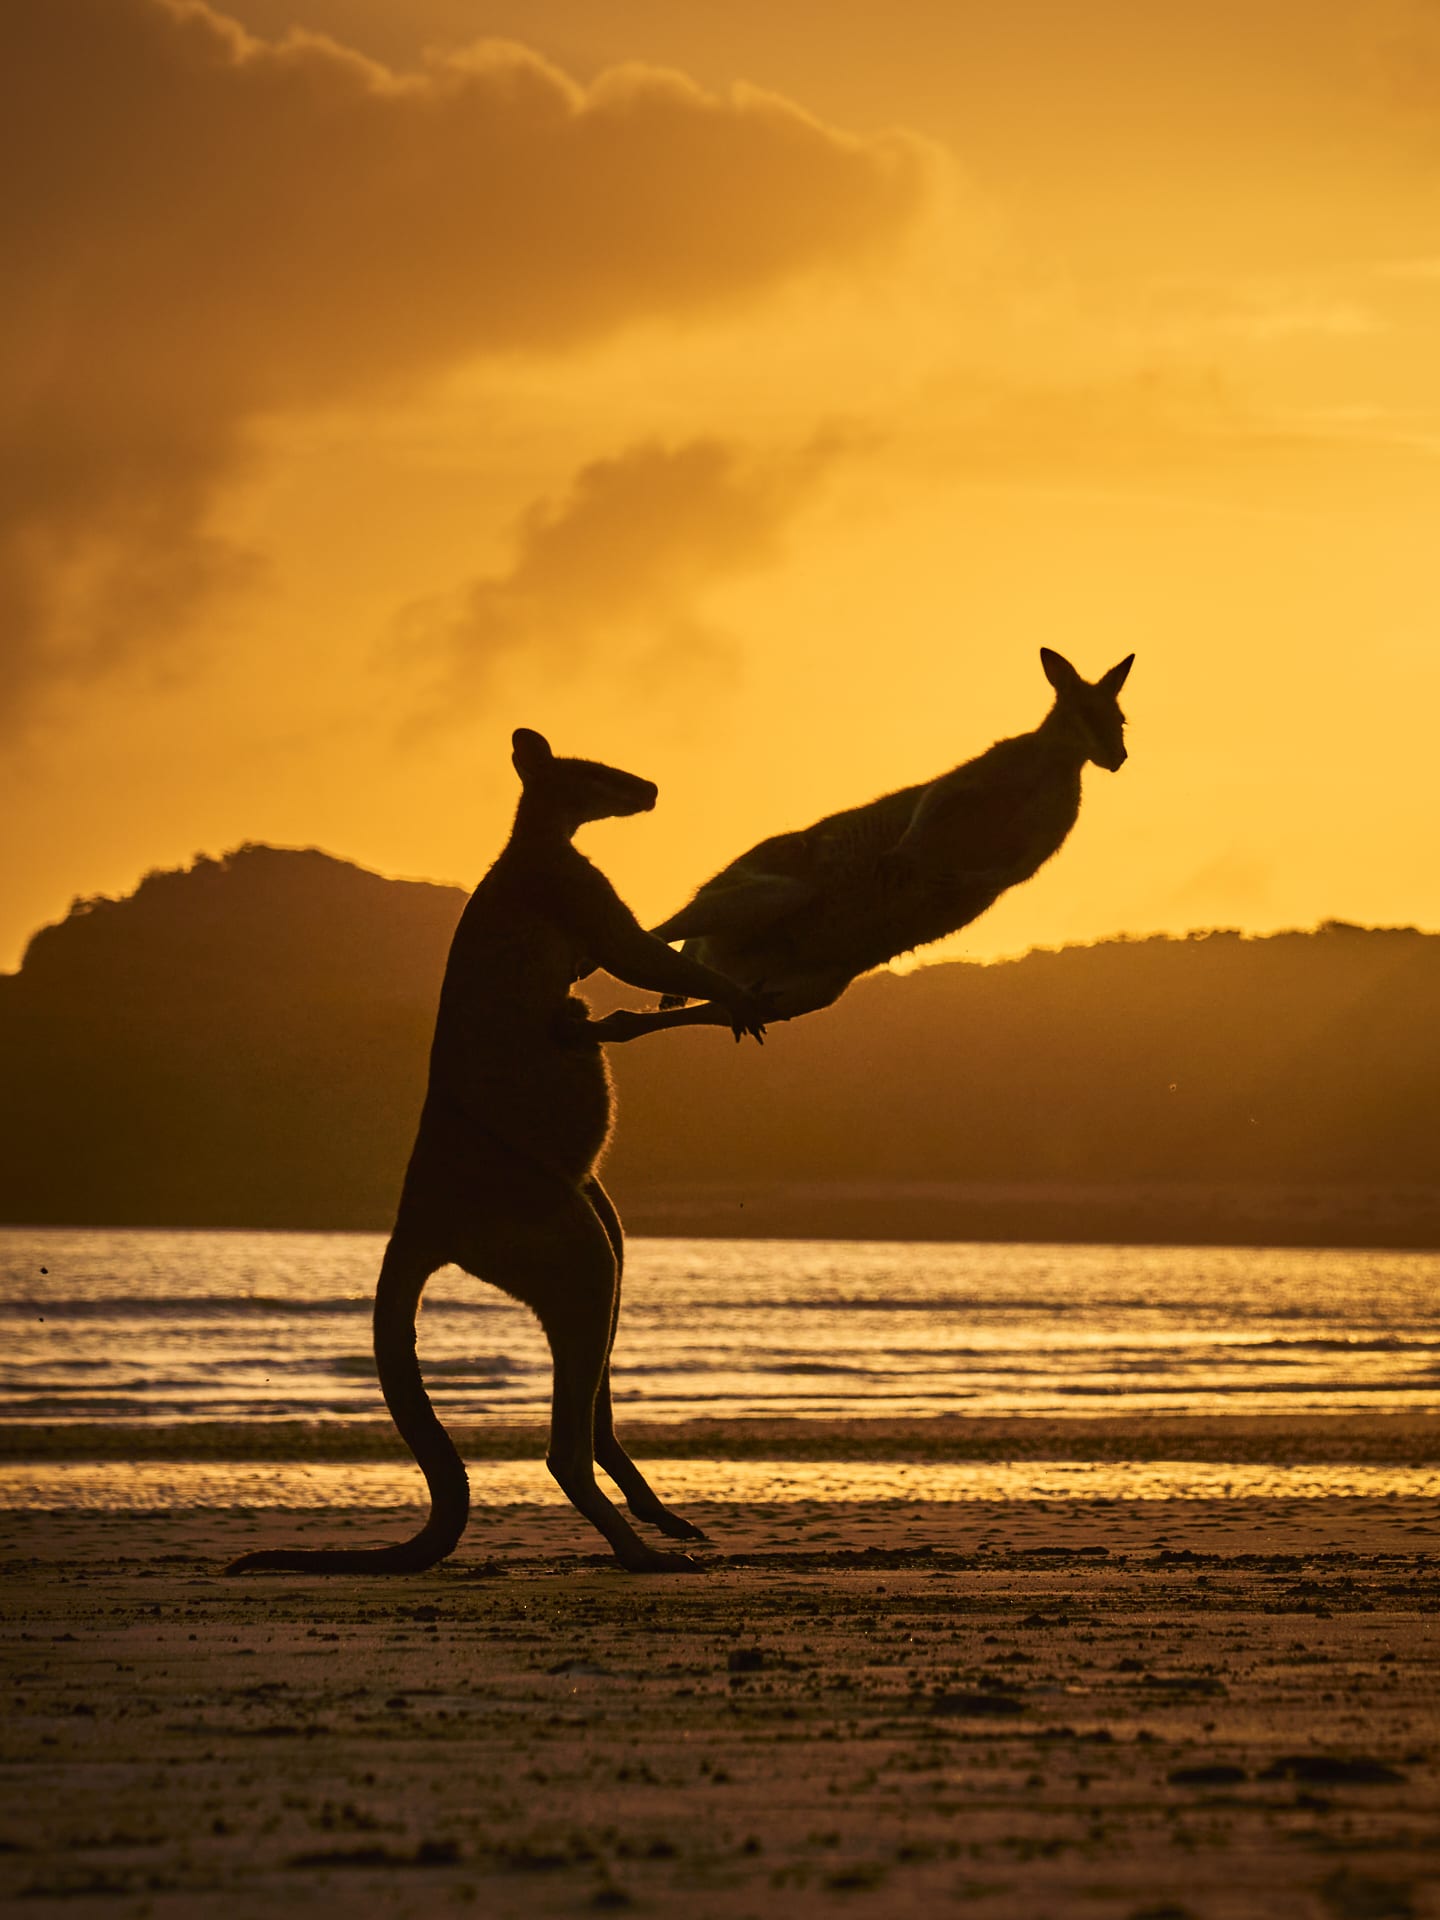 En Australia, un hombre británico documenta una imagen increíble de dos animales y un padre peleándose en la playa. 